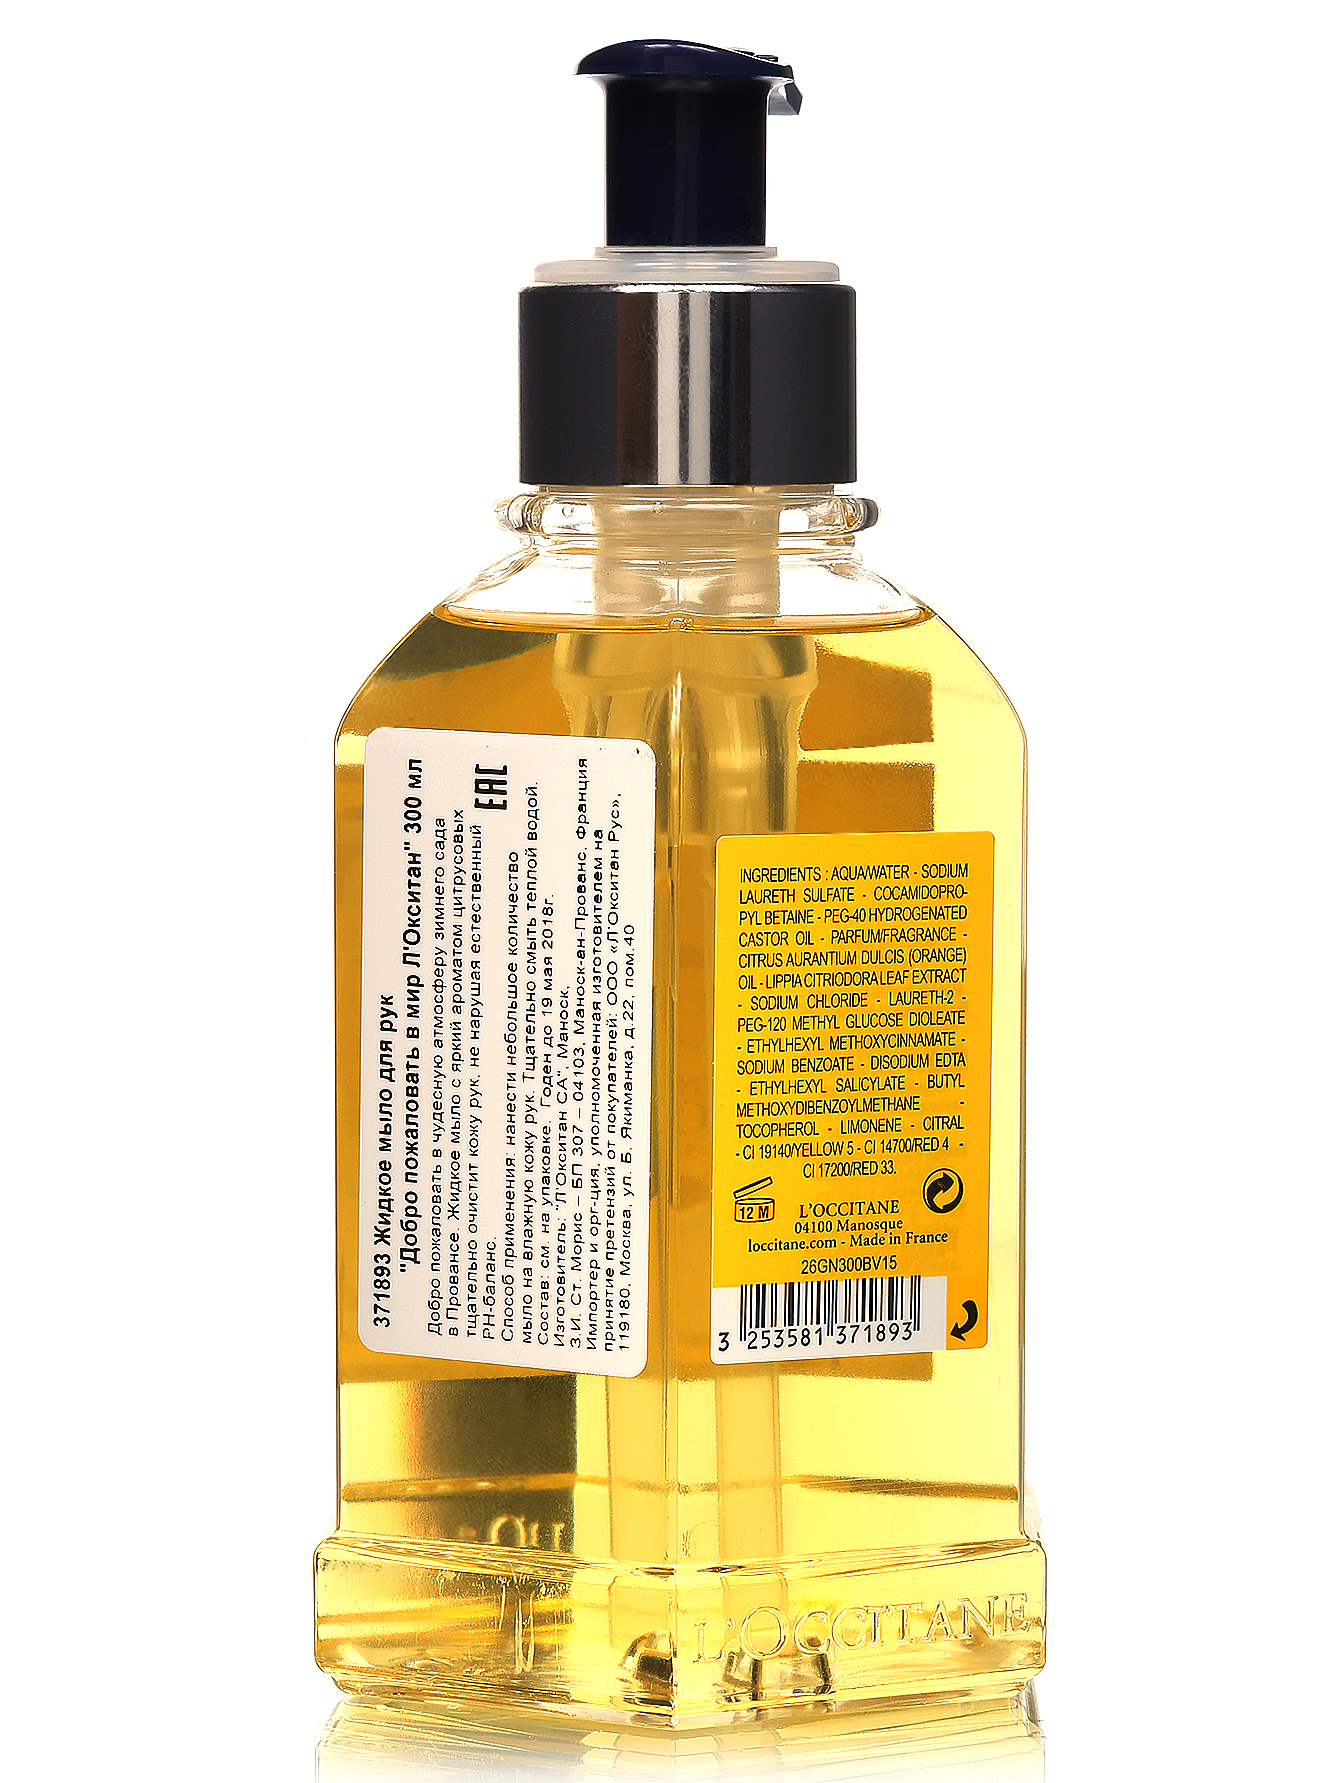 Жидкое мыло для рук - Collection De Grasse, 300ml - Модель Верх-Низ